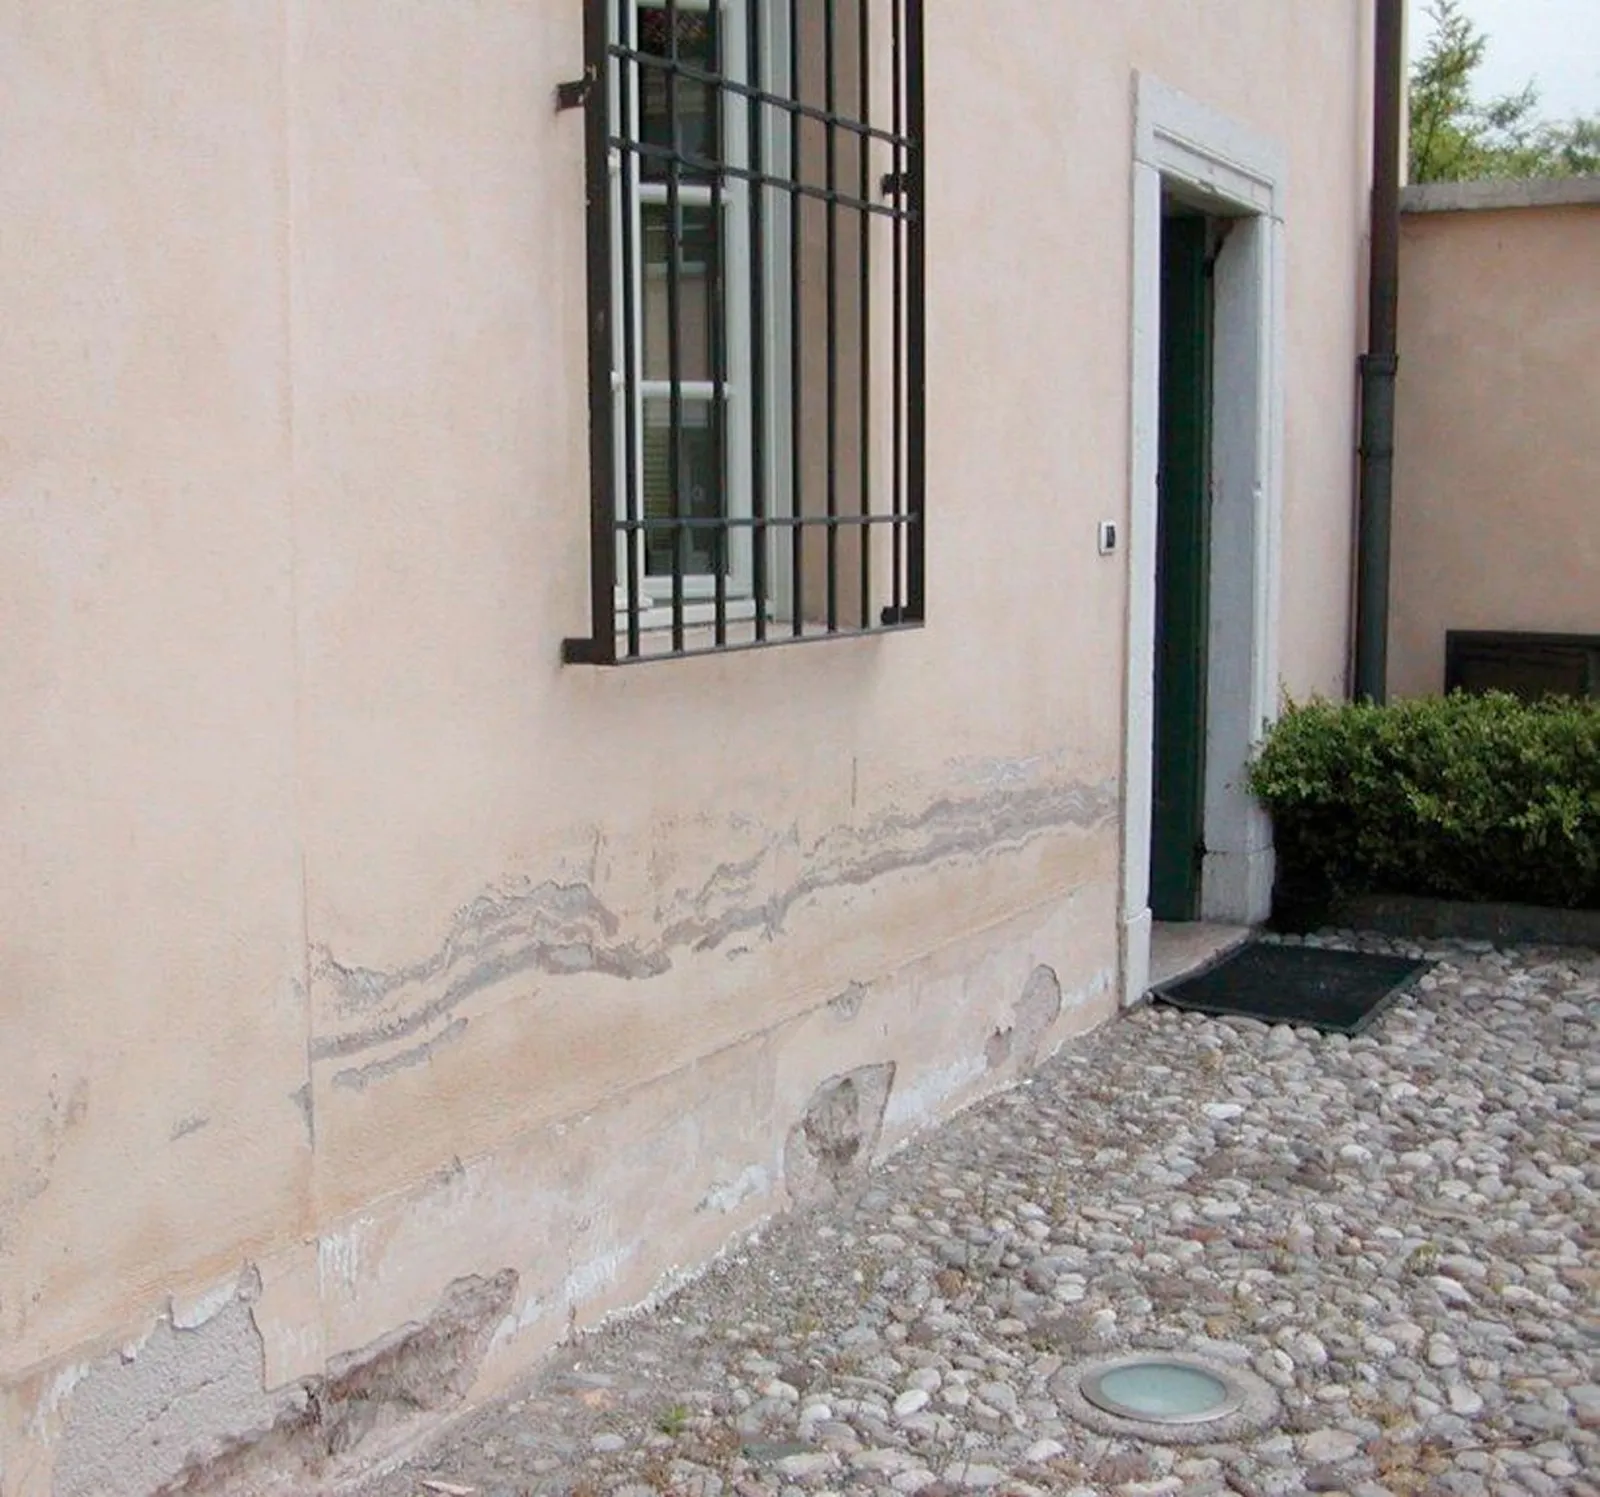 L'umidità nei muri per risalita capillare: 3 modi di contrasto - Cose di  Casa